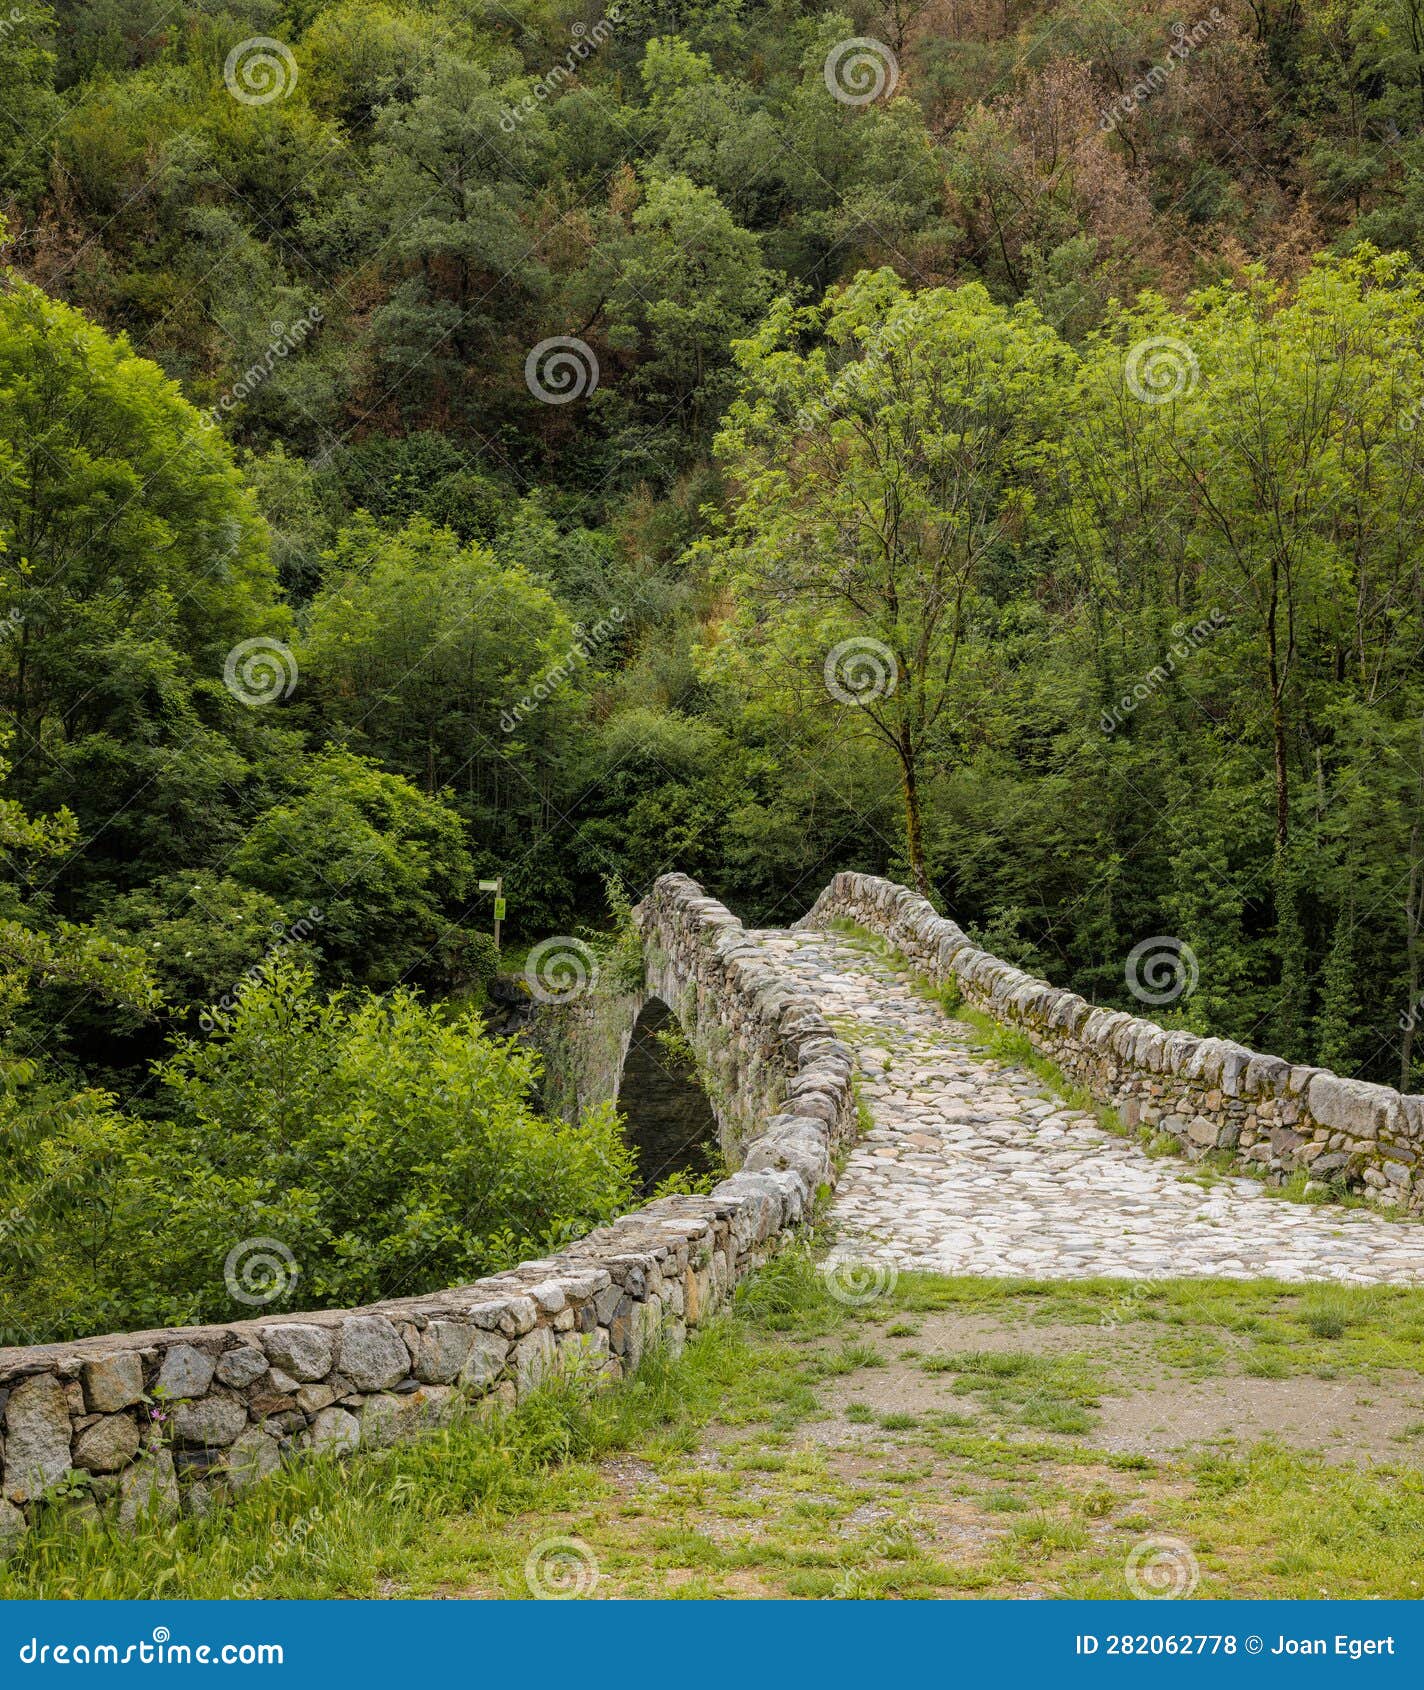 the ancient margineda bridge